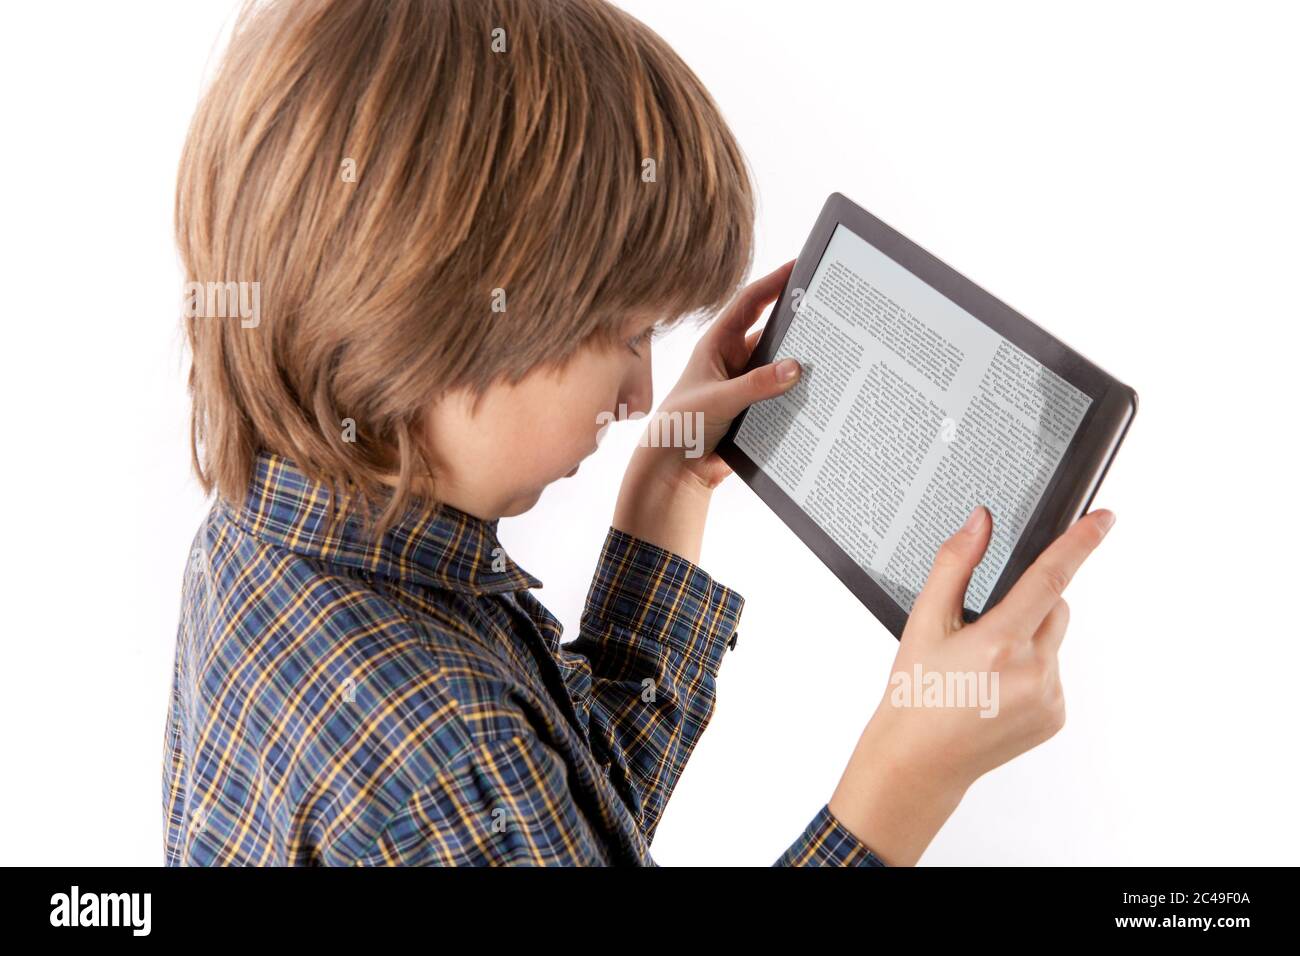 PC de table et autres gadgets peuvent causer des problèmes de vue - jeune garçon lisant un article sur une tablette la tenant trop près de ses yeux. Isolé sur le coup Banque D'Images